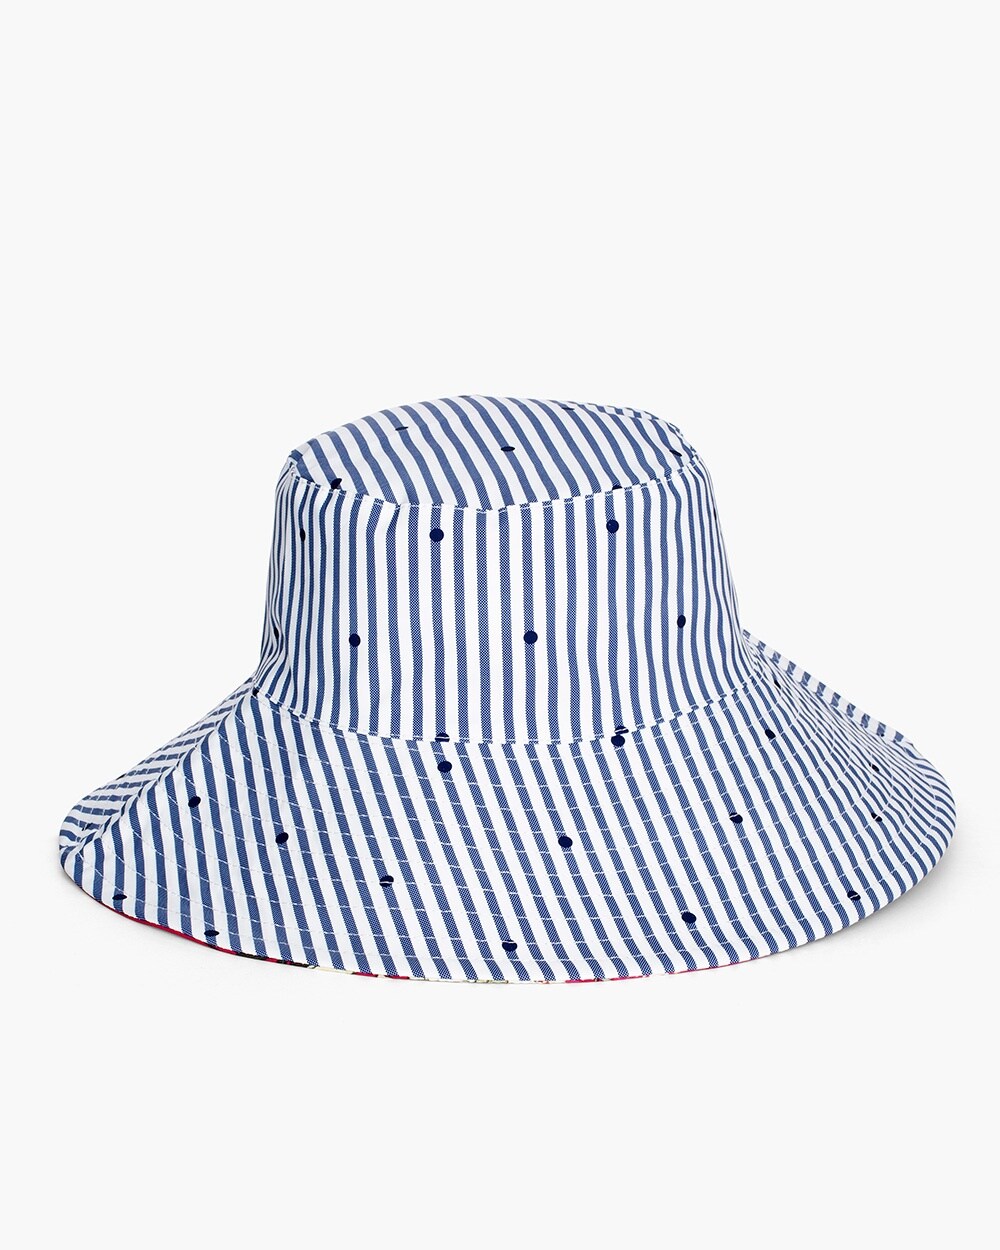 Reversible Striped Dot-Floral Rain Hat